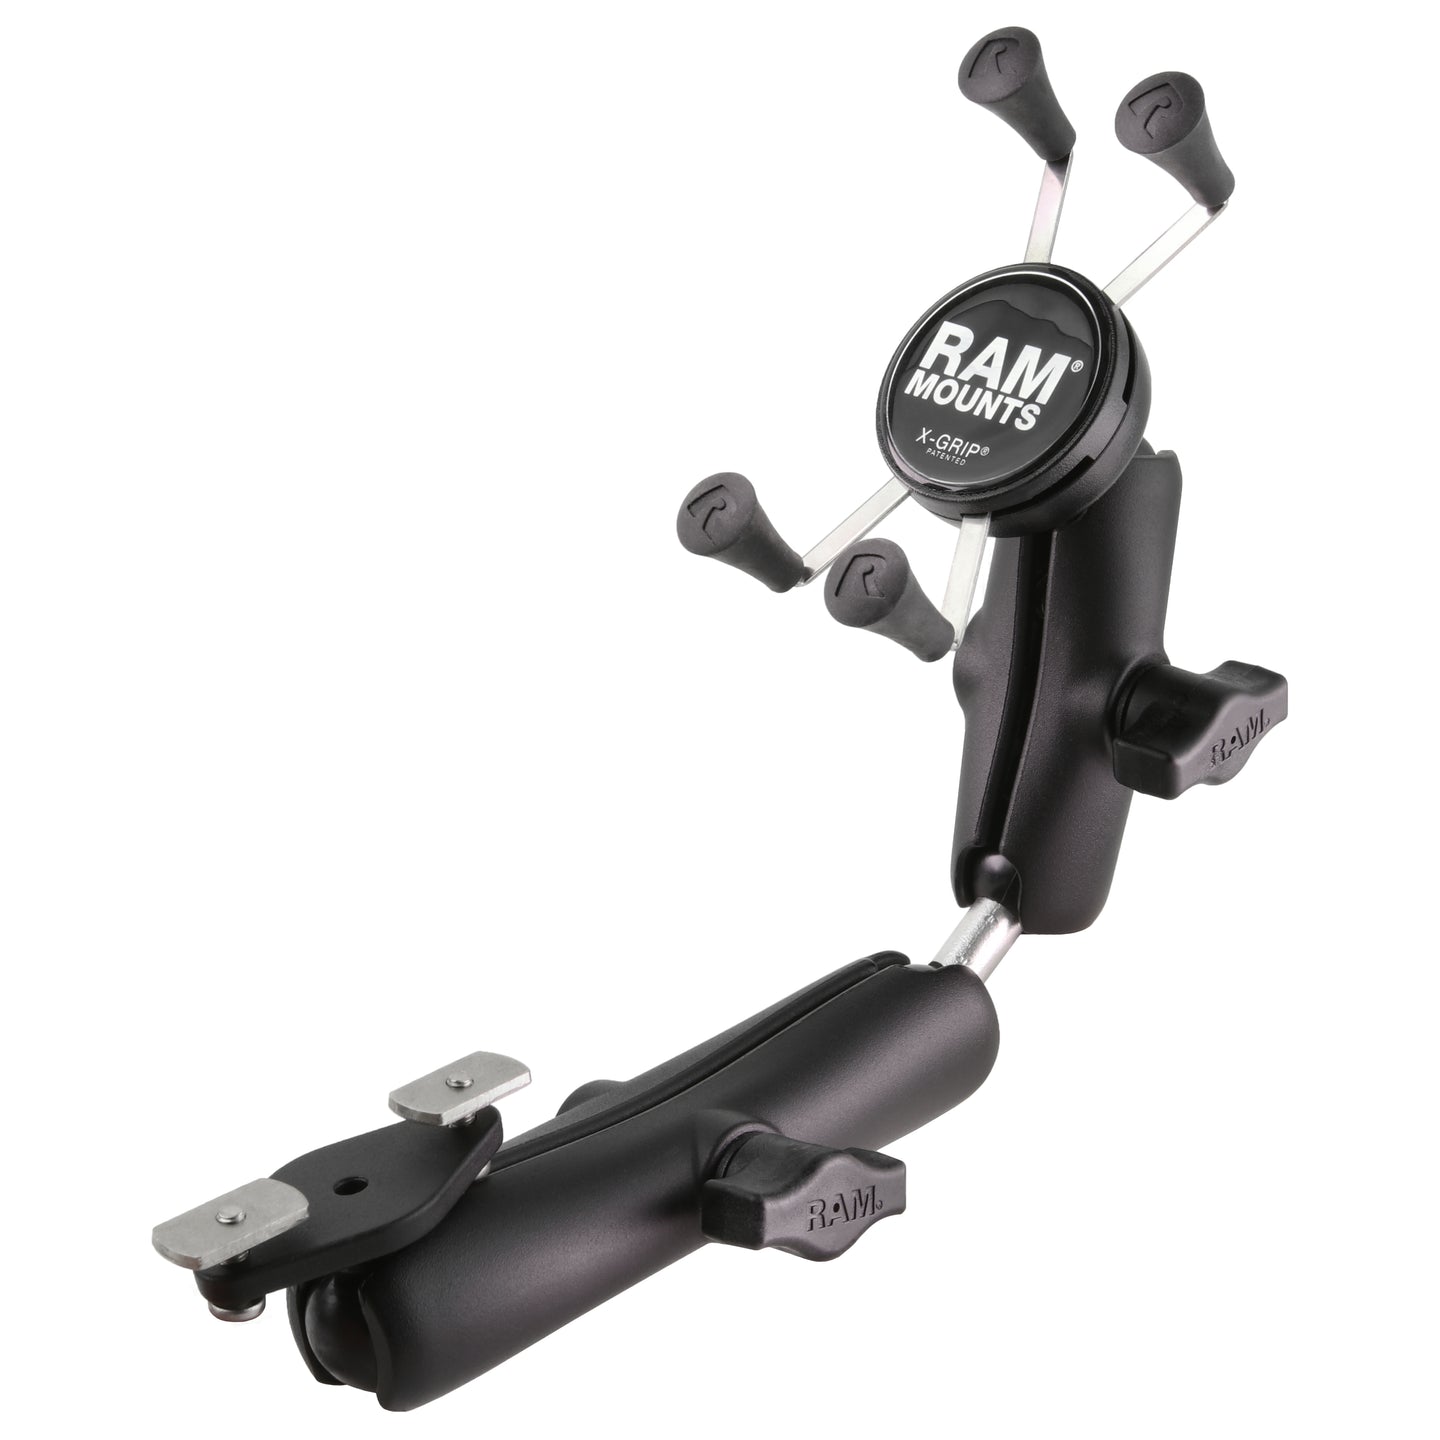 RAM? X-Grip? Phone Mount for Wheelchair Armrests - RAM-B-238-WCT-2-UN7